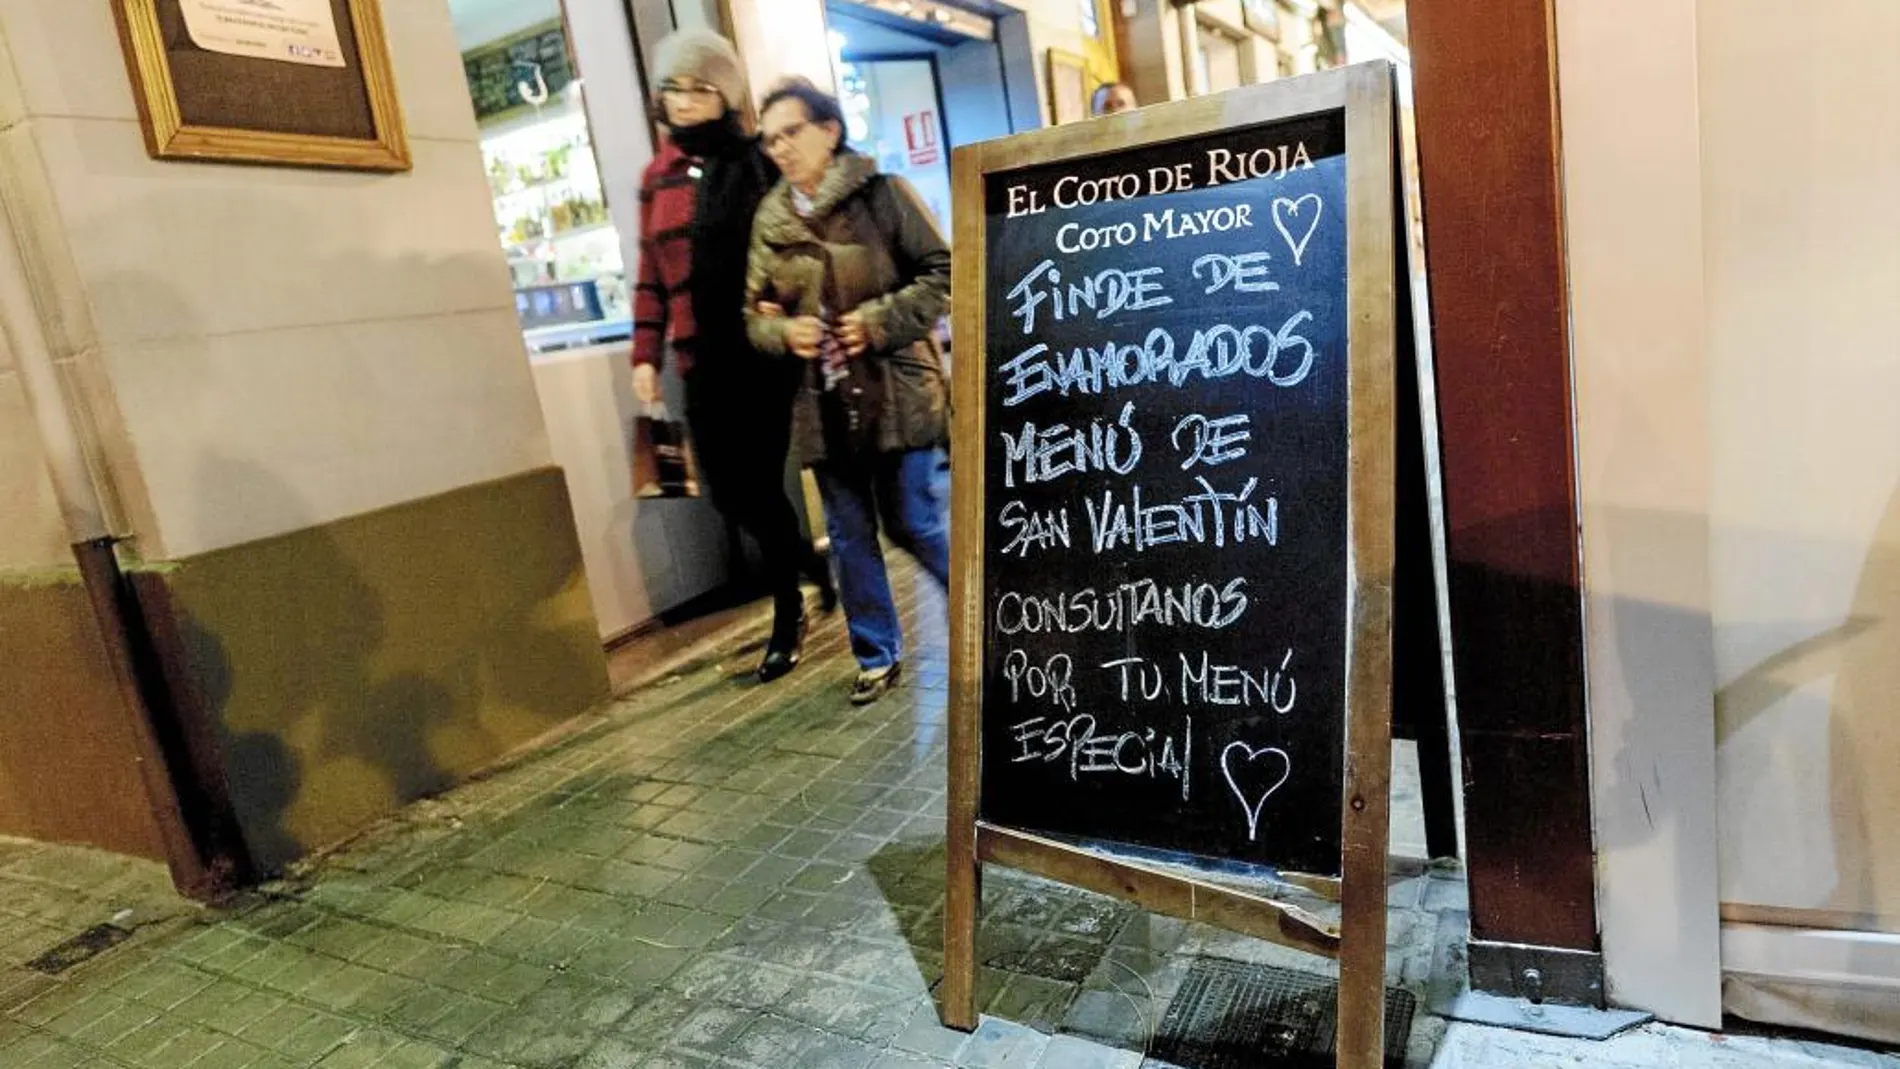 Los restaurantes valencianos se preparan para uno de sus días más rentables